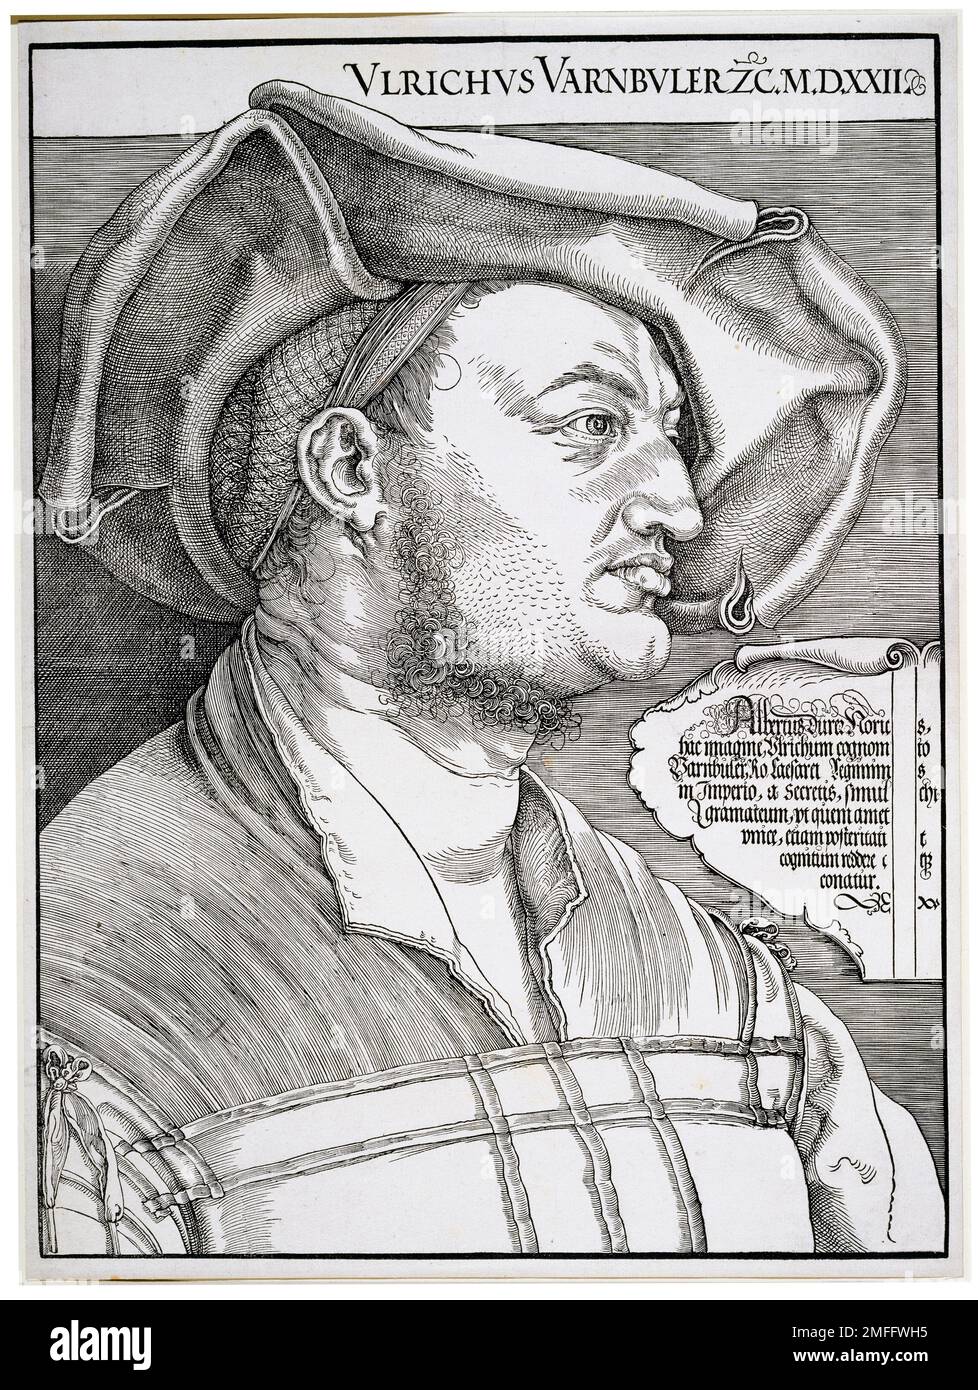 Albrecht Durer, Portrait of Ulrich Varnbüler, woodcut print, 1522 Stock Photo